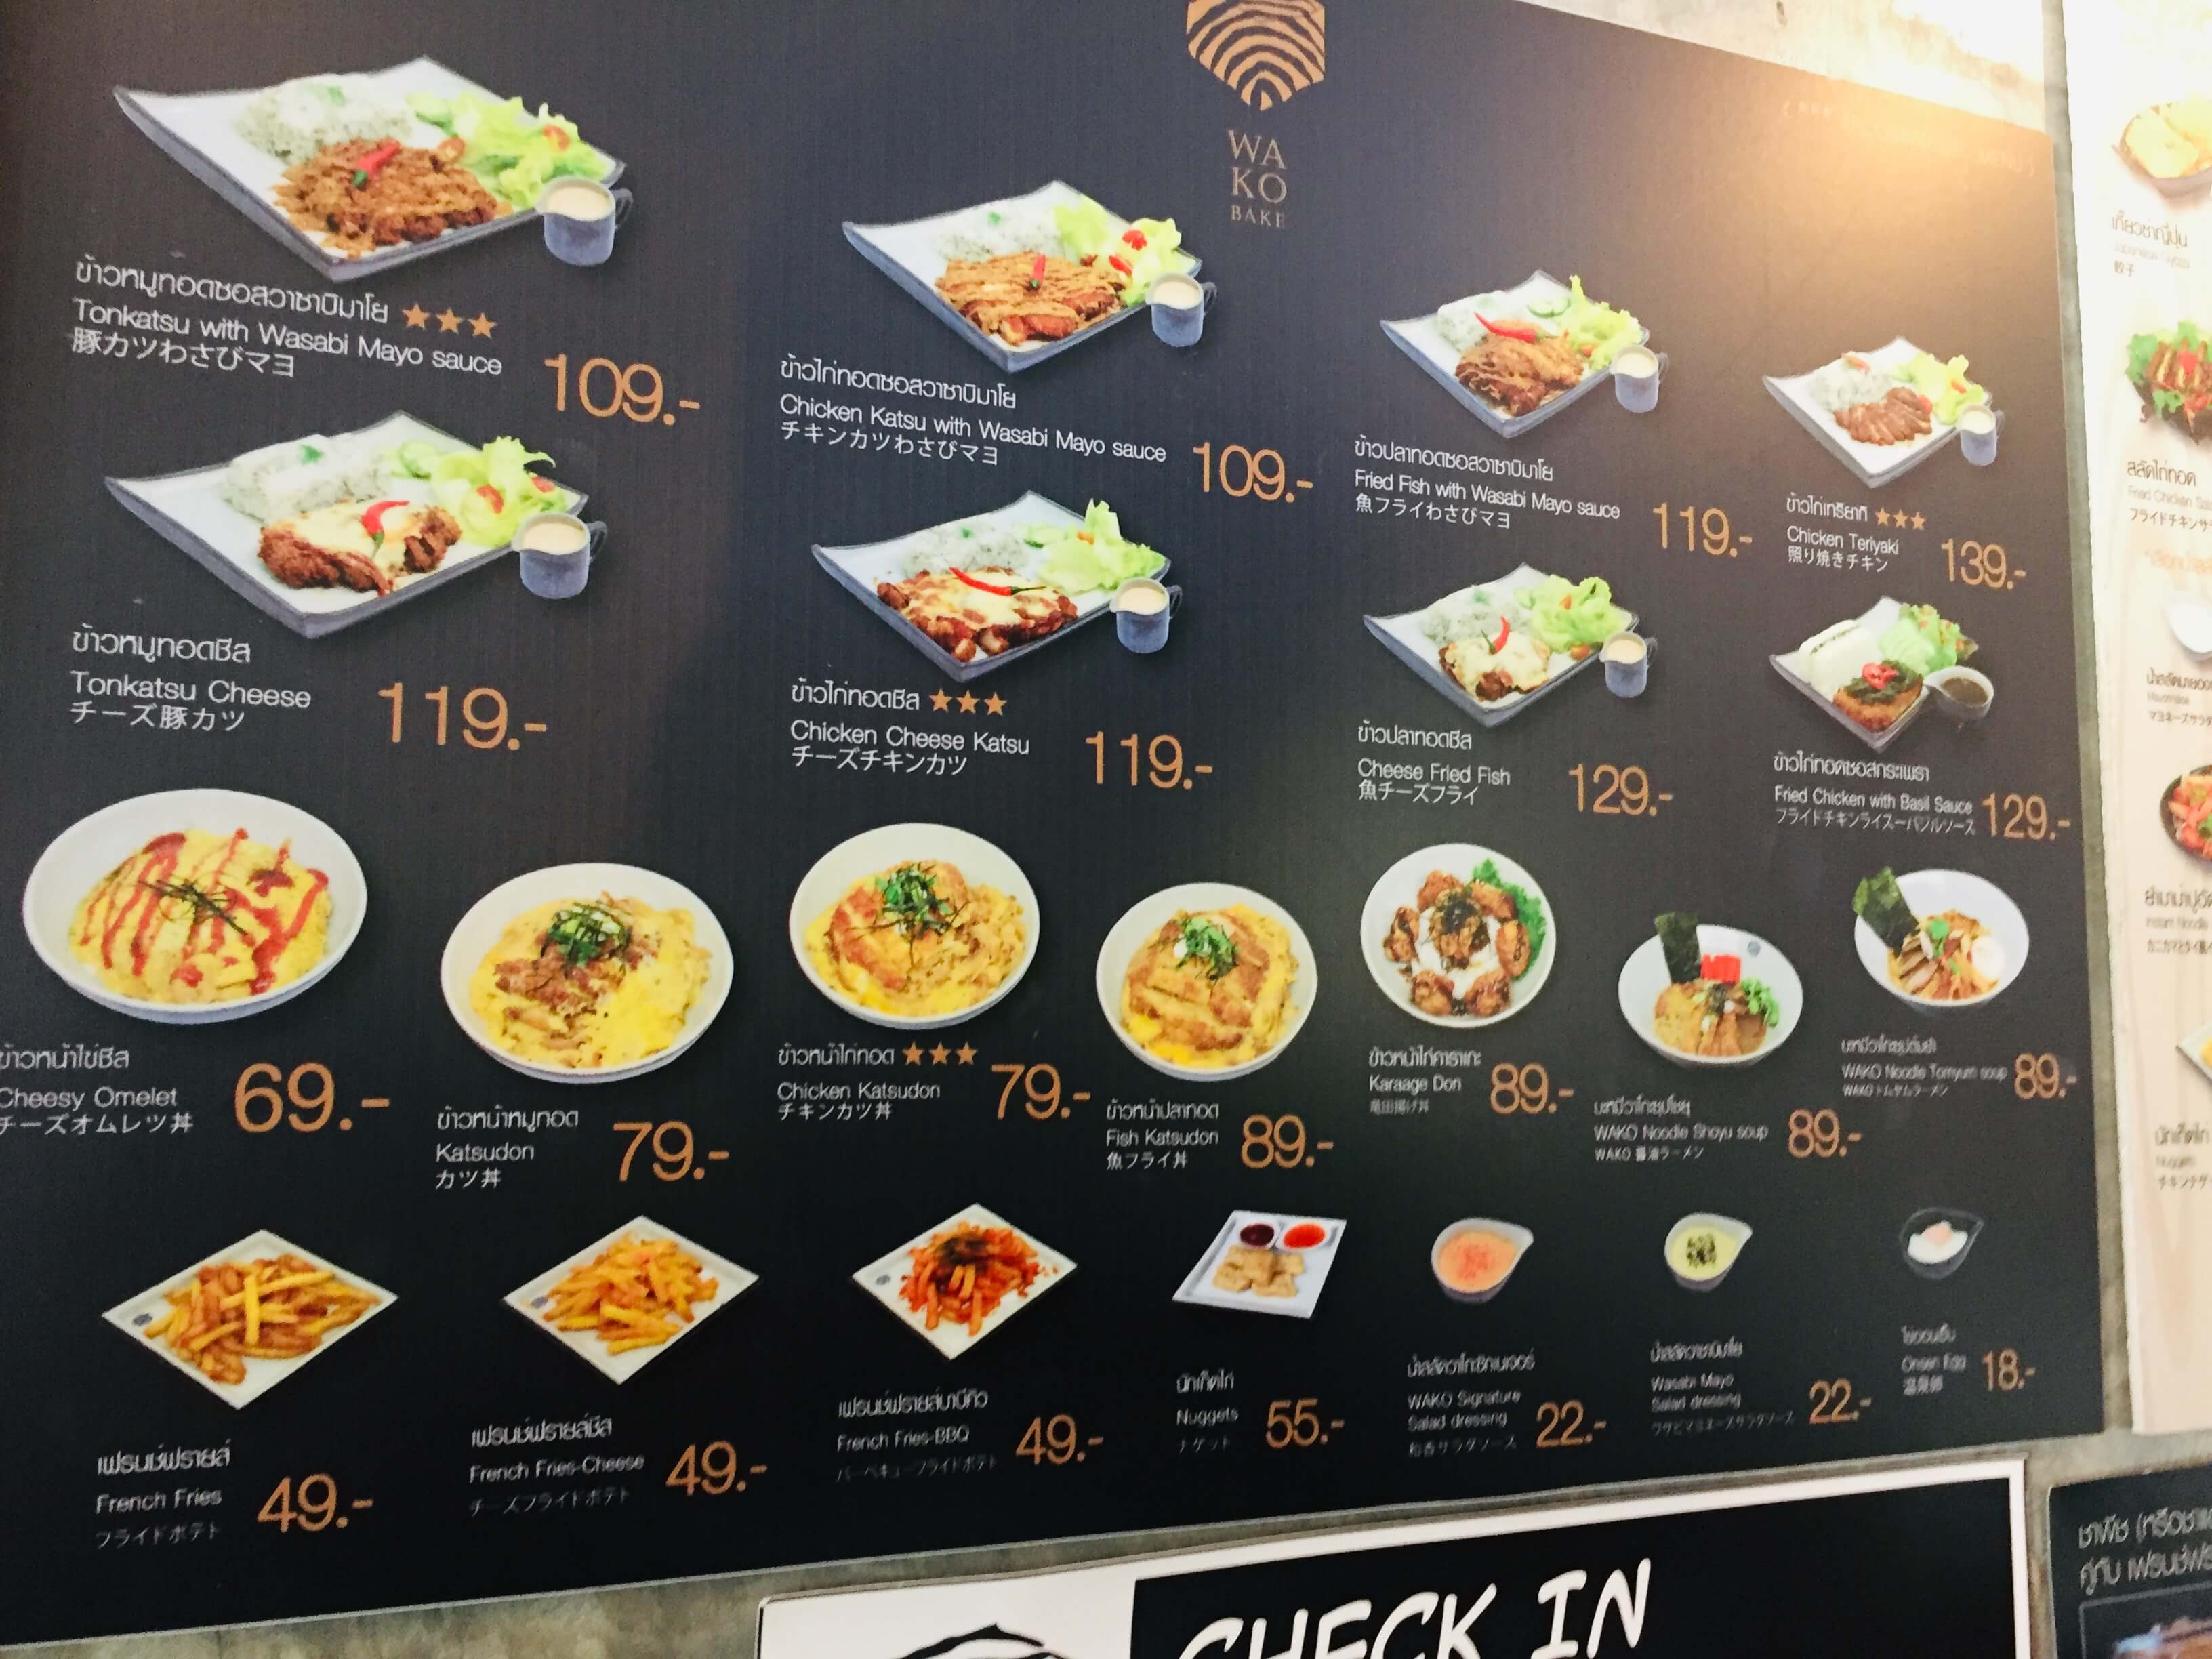 タイ 235円で日本食が食べられるおしゃれカフェwako Bake 教えてasean 海外 Aseanの飲食店出店なら